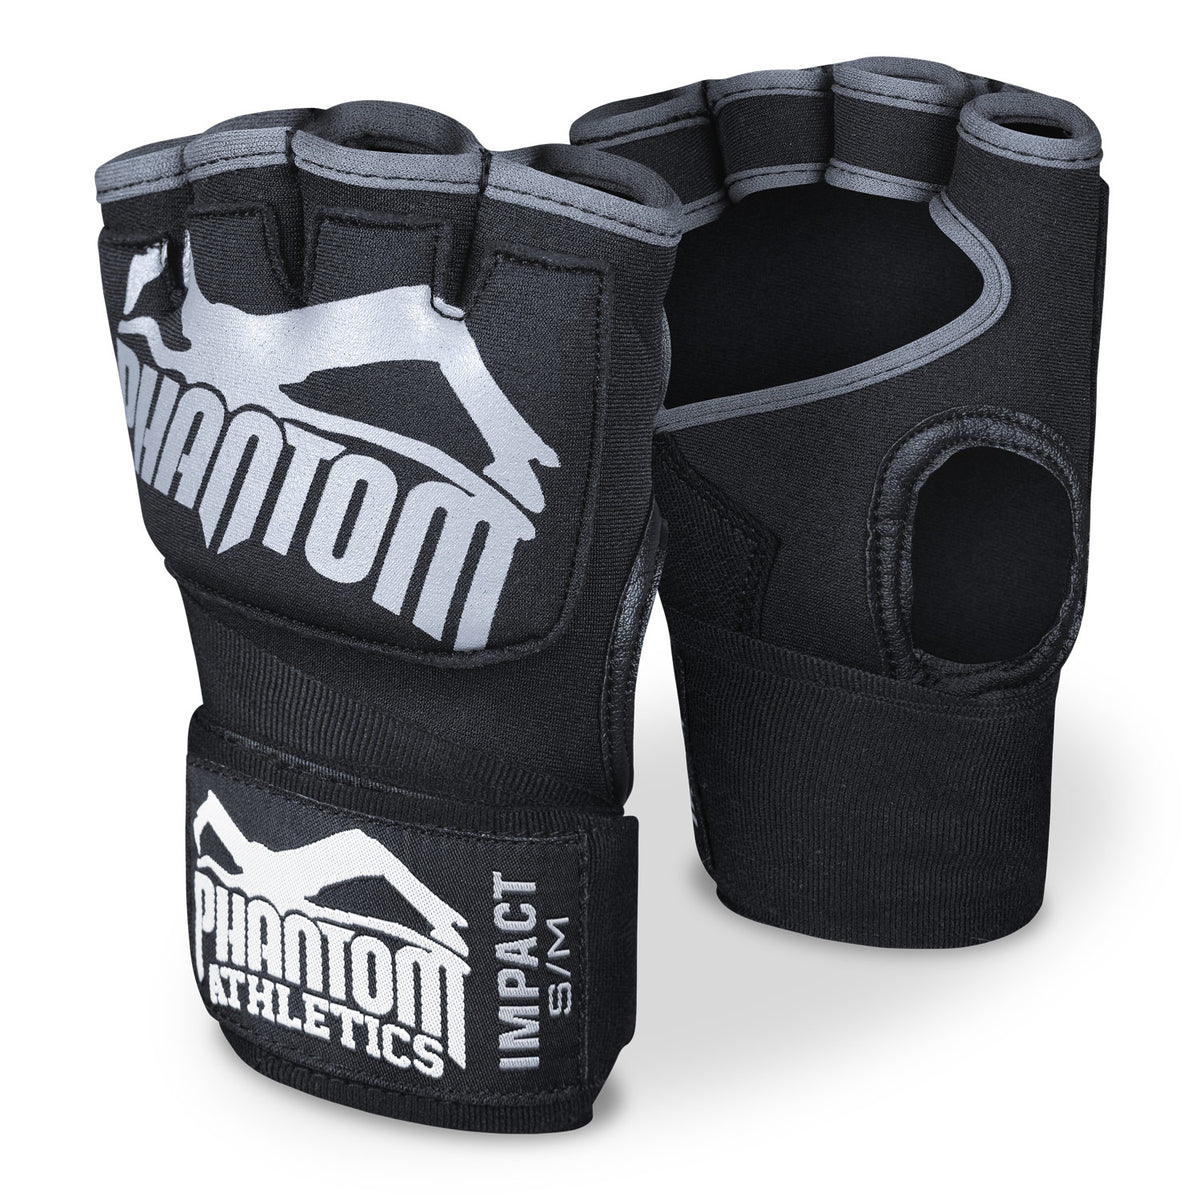 Las vendas de boxeo Phantom Impact con relleno de gel. Para mayor protección en tu entrenamiento de artes marciales.